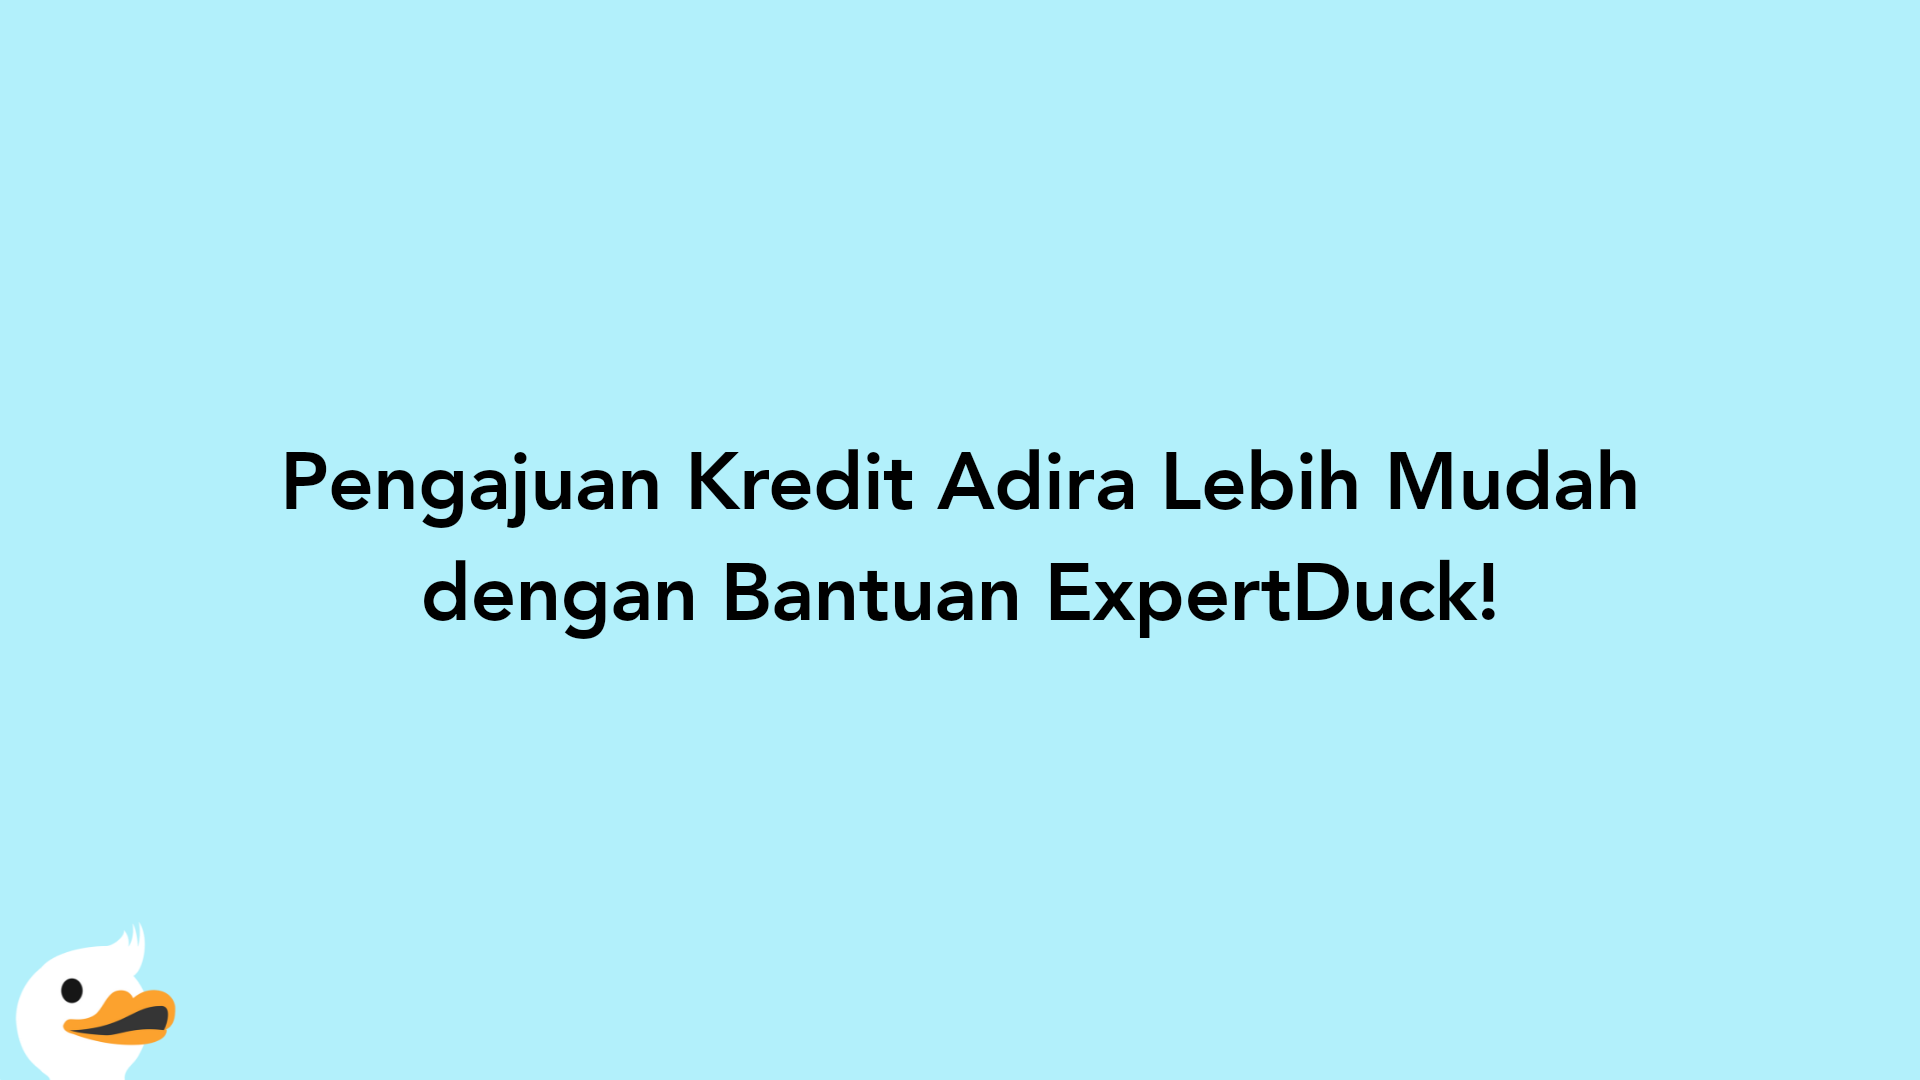 Pengajuan Kredit Adira Lebih Mudah dengan Bantuan ExpertDuck!